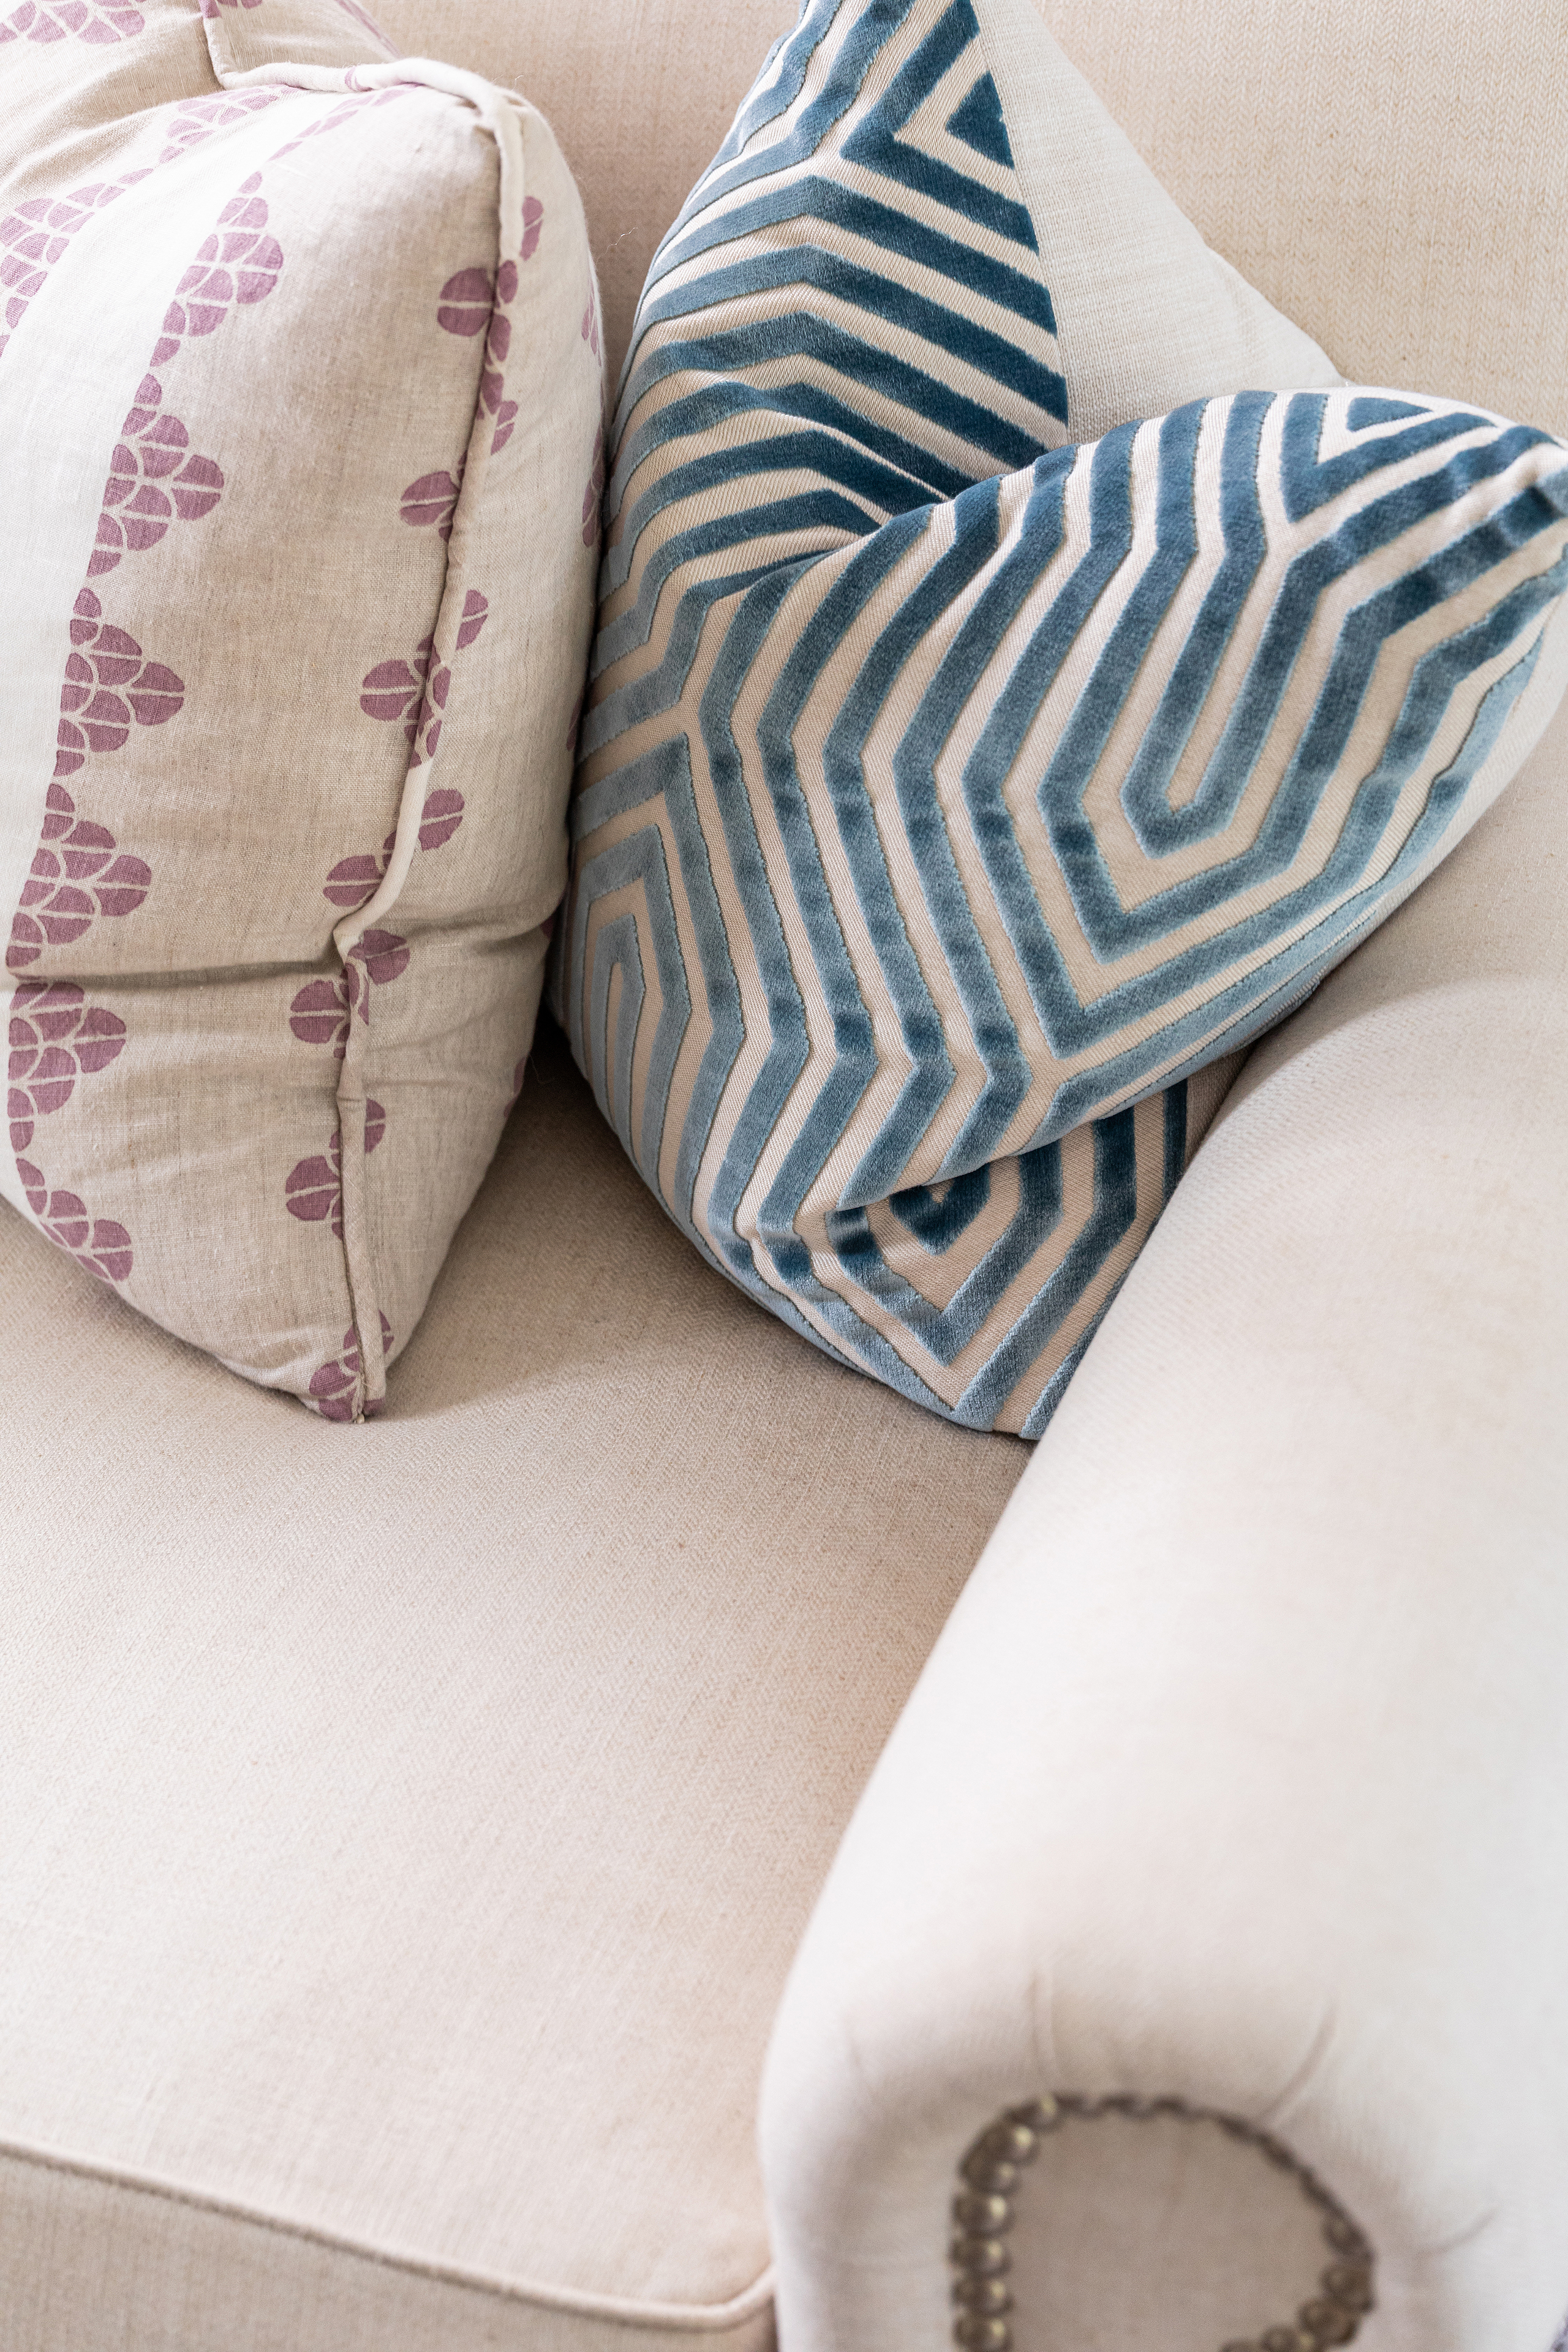 custom pillows, full service design